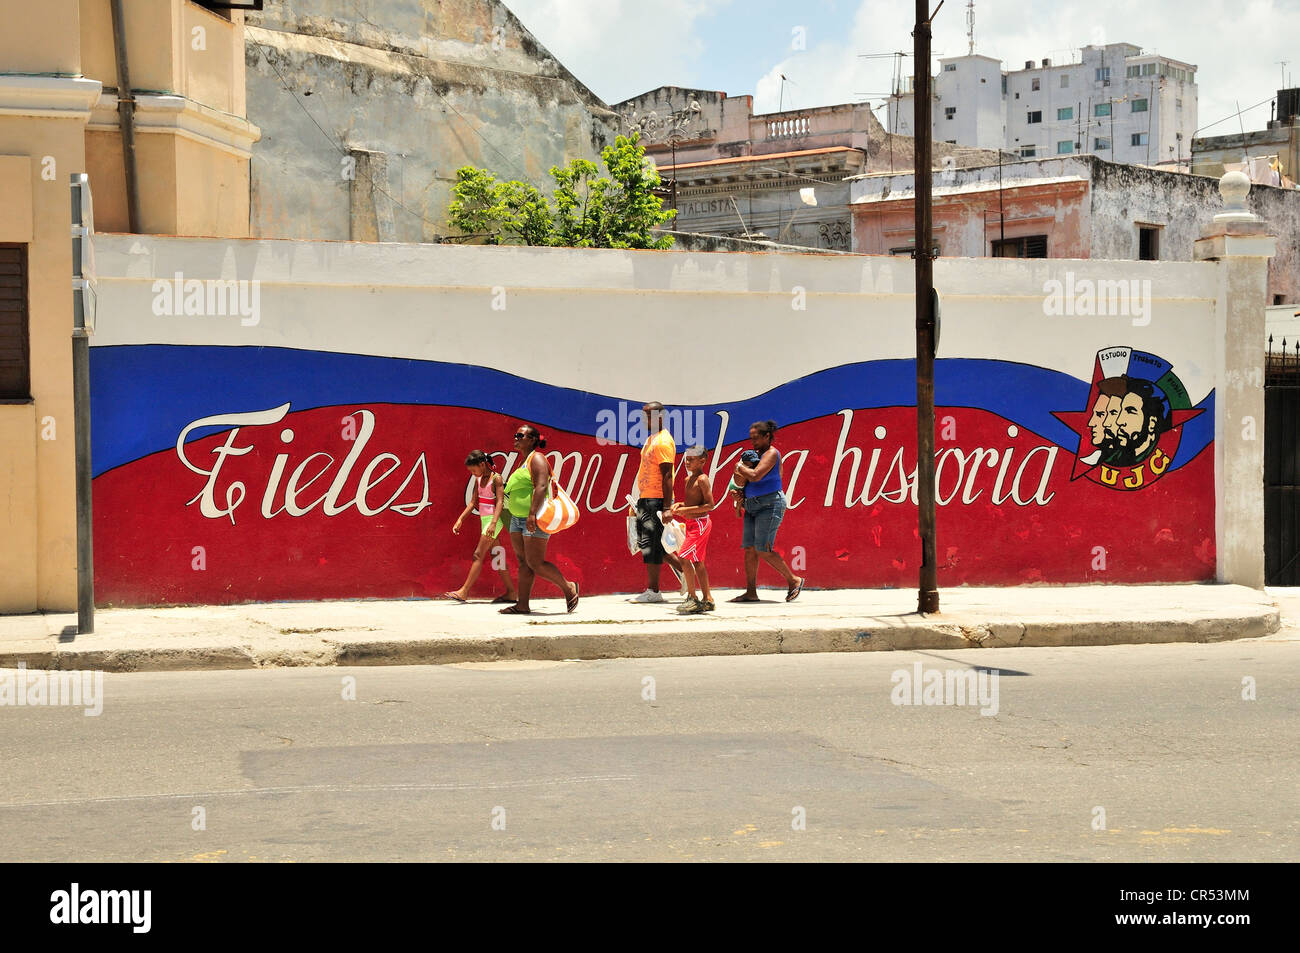 Les habitants devant un mur peinture 'Fieles a nuestra historia" ou "Fidèles à notre histoire", Habana Vieja, La Havane, Cuba Banque D'Images